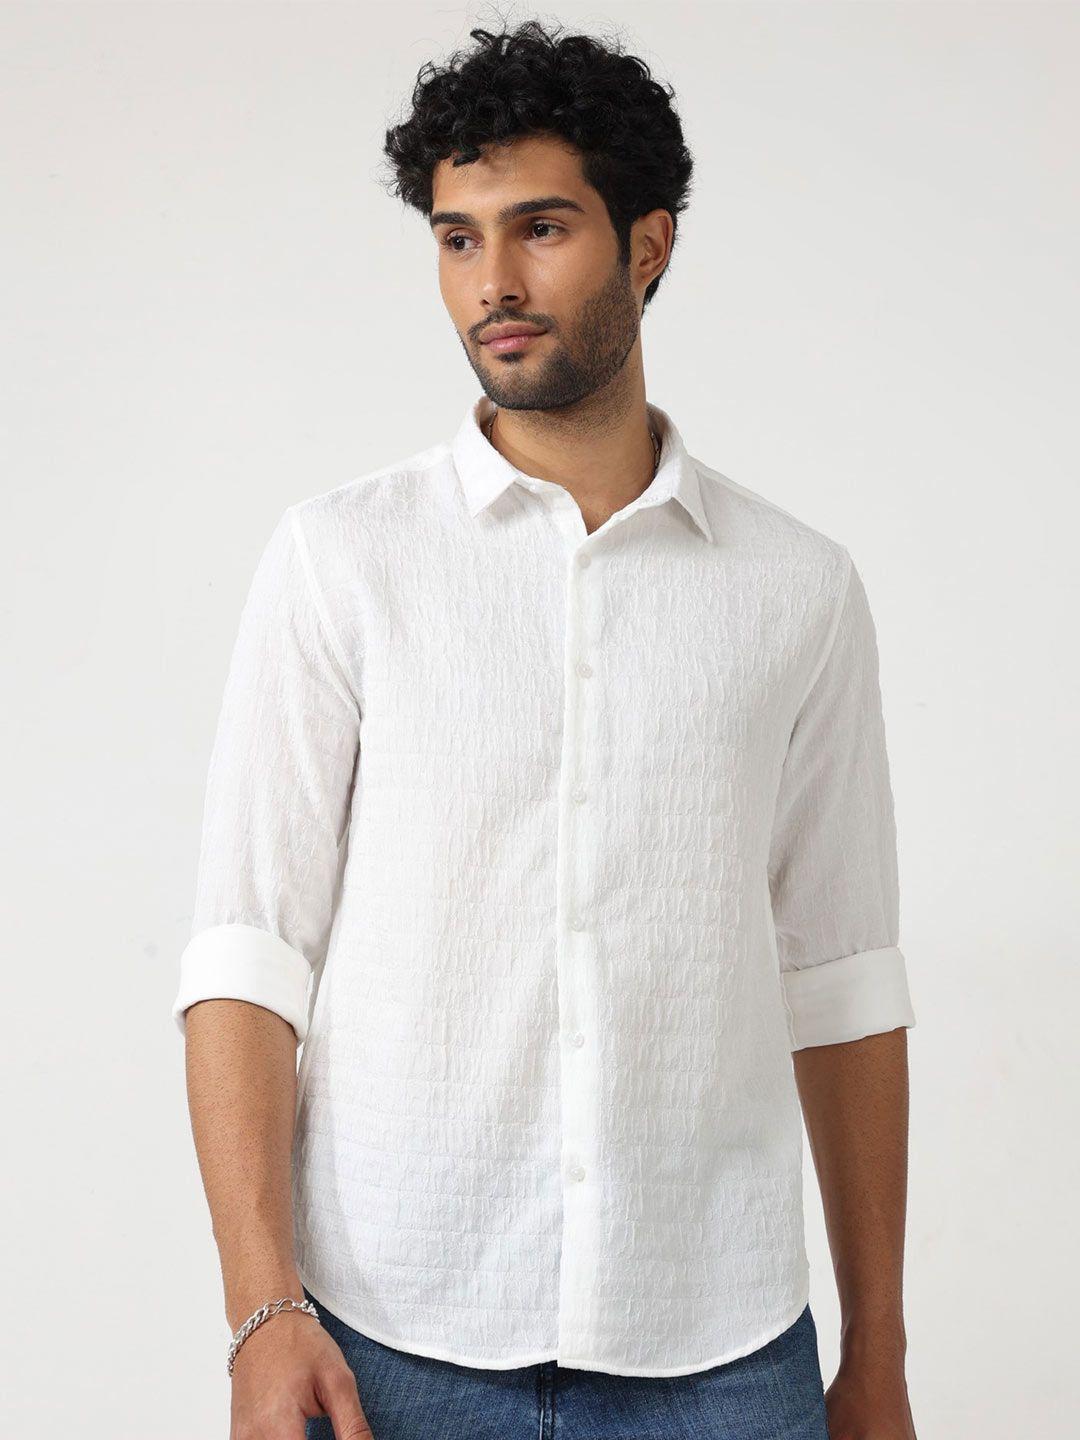 badmaash-slim-fit-self-design-casual-shirt